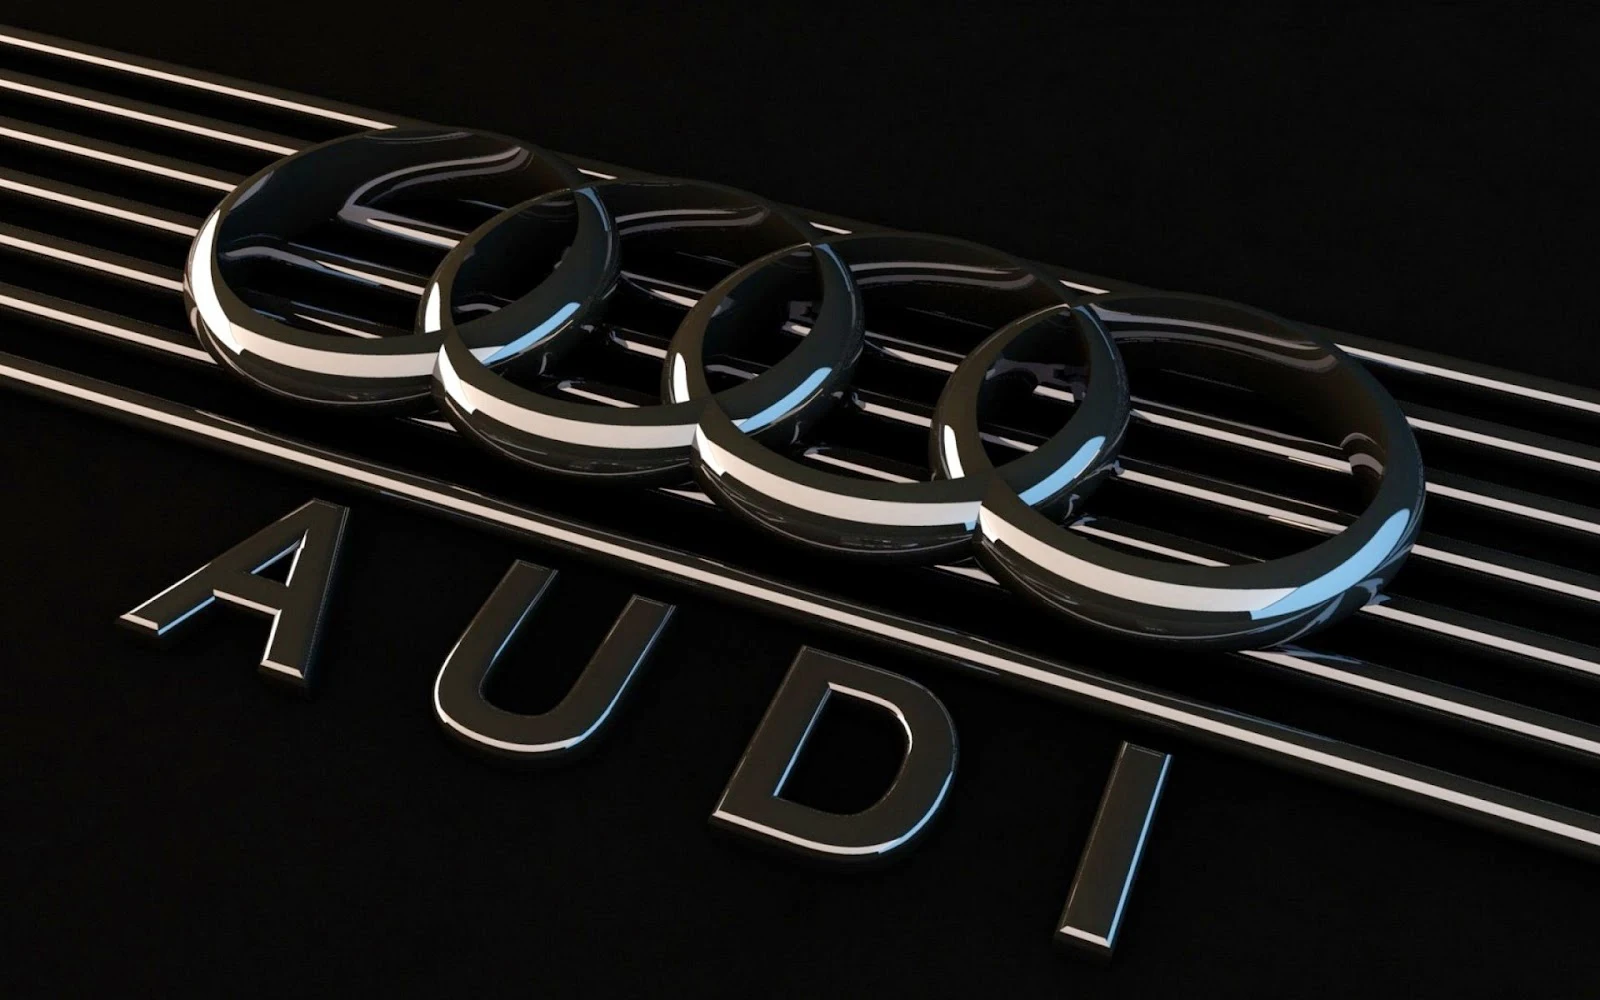 Zwarte Audi wallpaper in 3D met naam Audi en logo